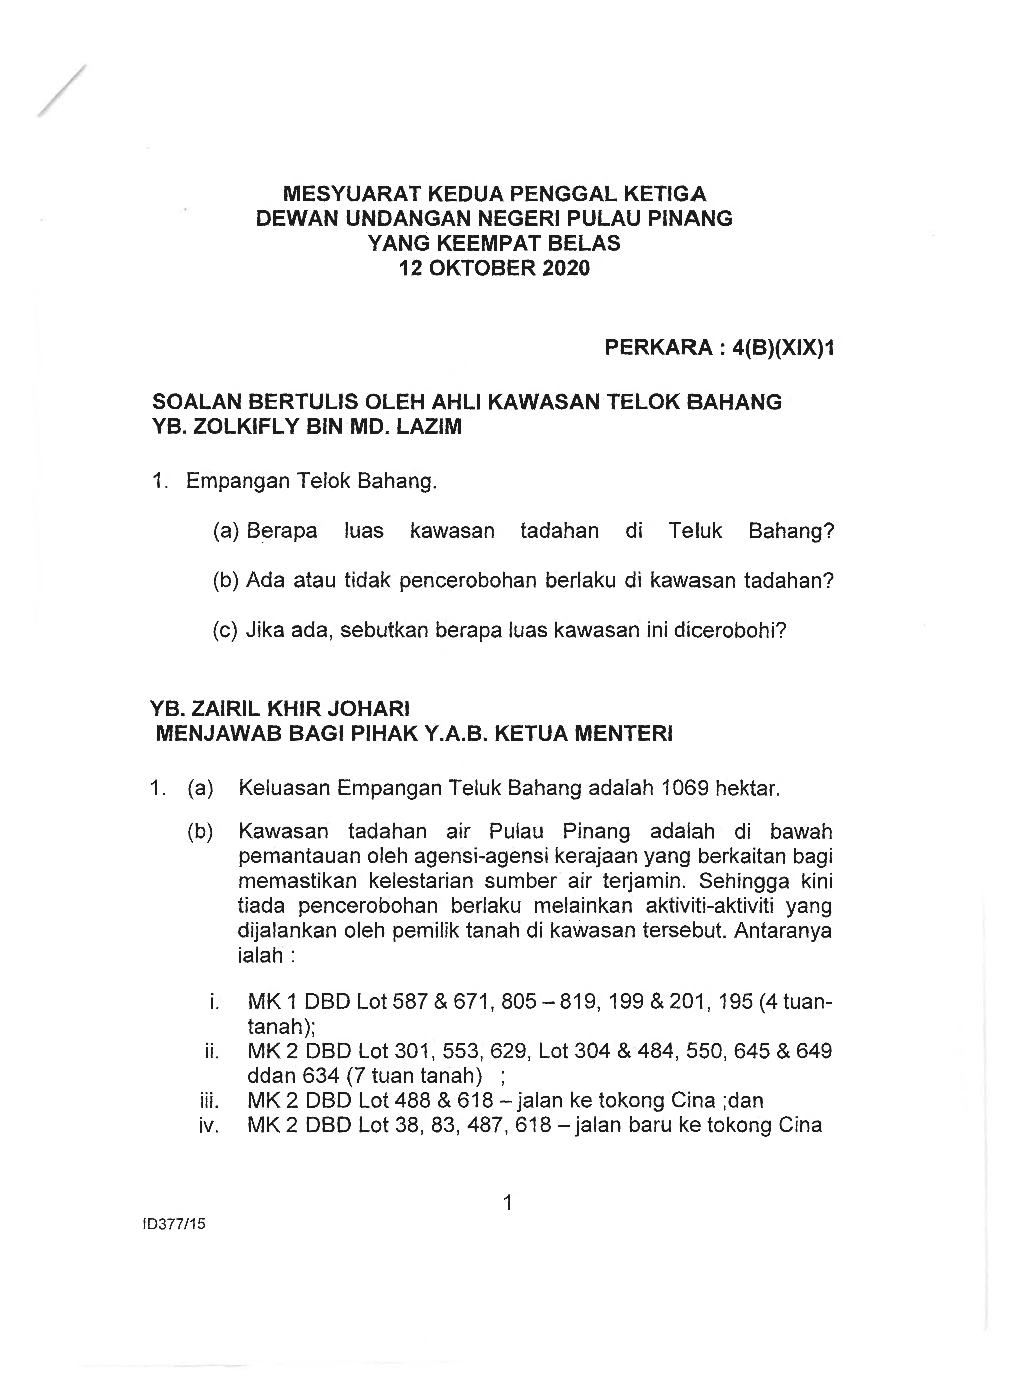 Mesyuarat Kedua Penggal Ketiga Dewan Undangan Negeri Pulau Pinang Yang Keempat Belas 12 Oktober 2020